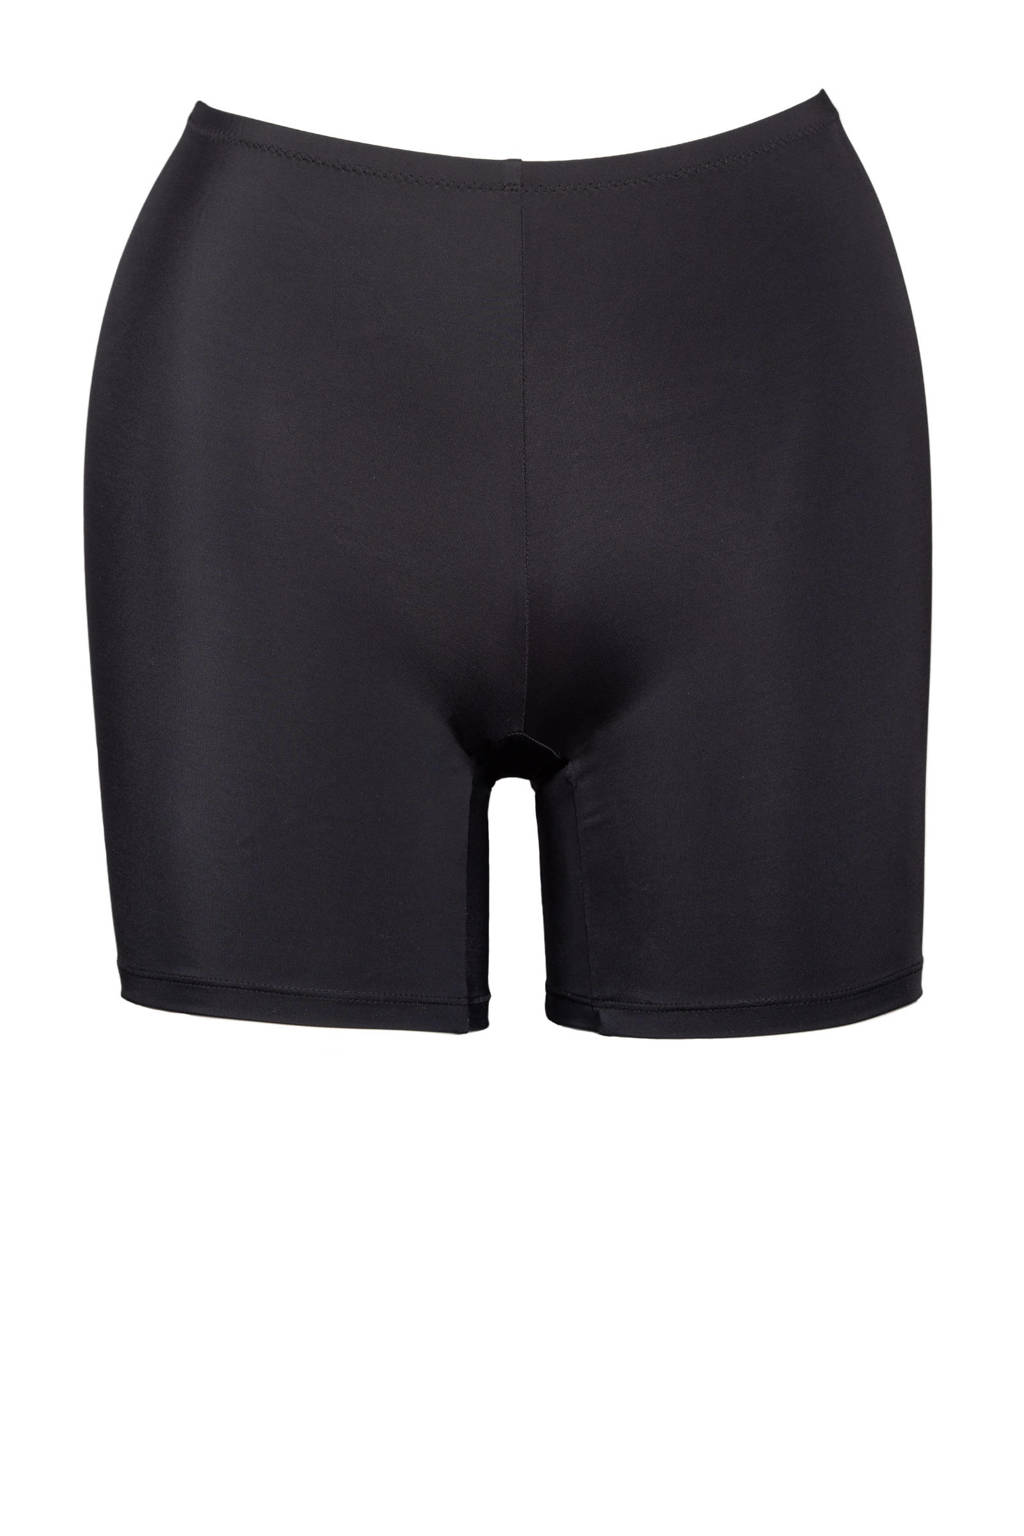 knecht Aanmoediging Dicteren Plaisir +size high waist short bikinibroekje met pijpjes zwart | wehkamp